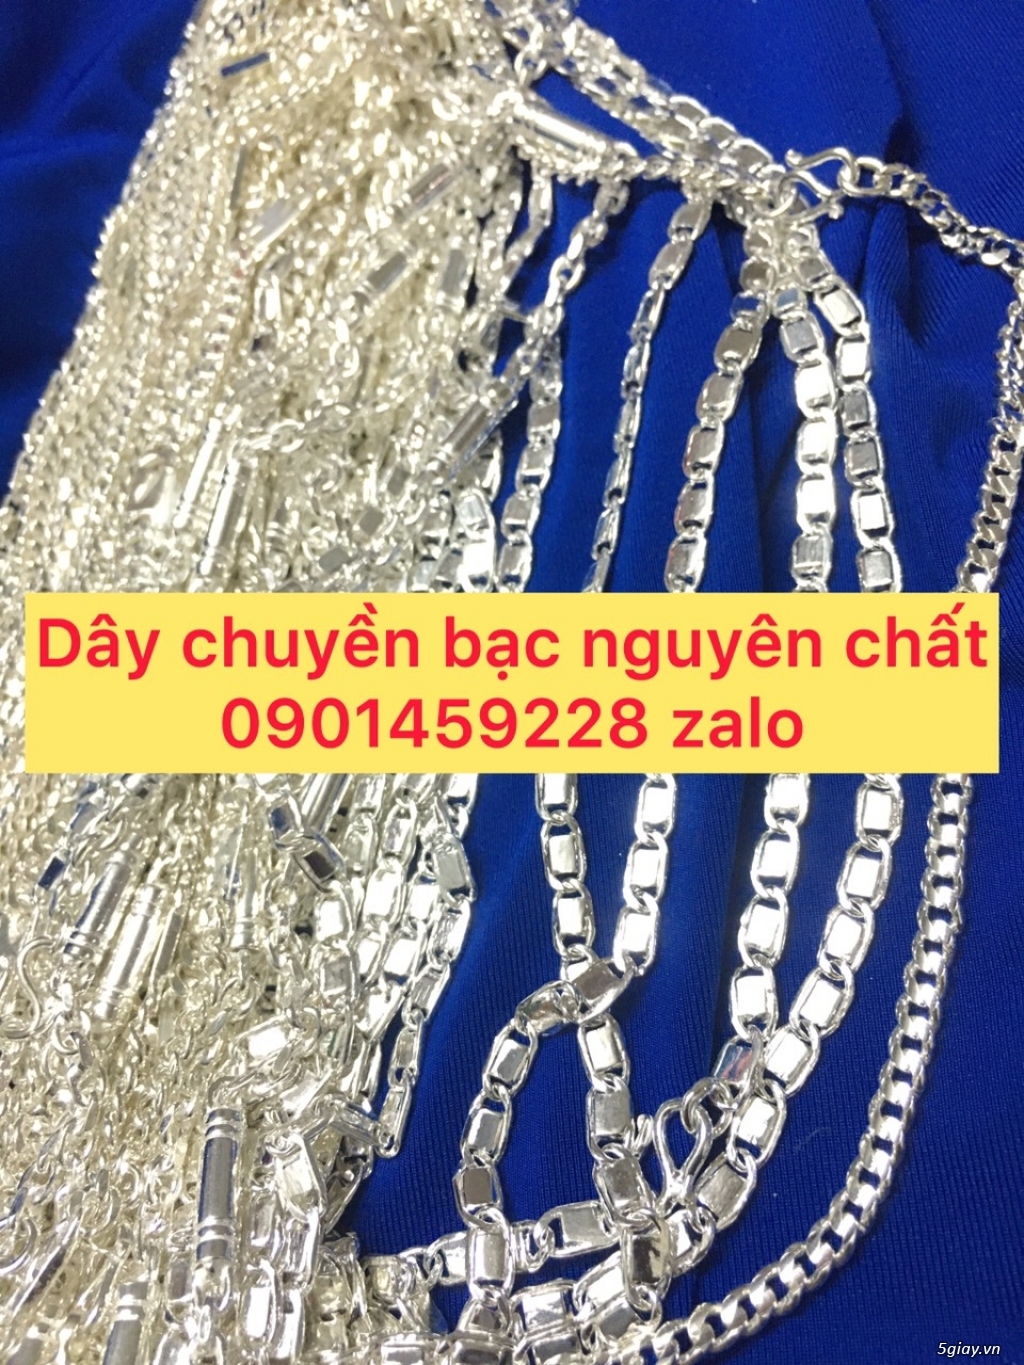 day chuyen bac nguyen chat - 1